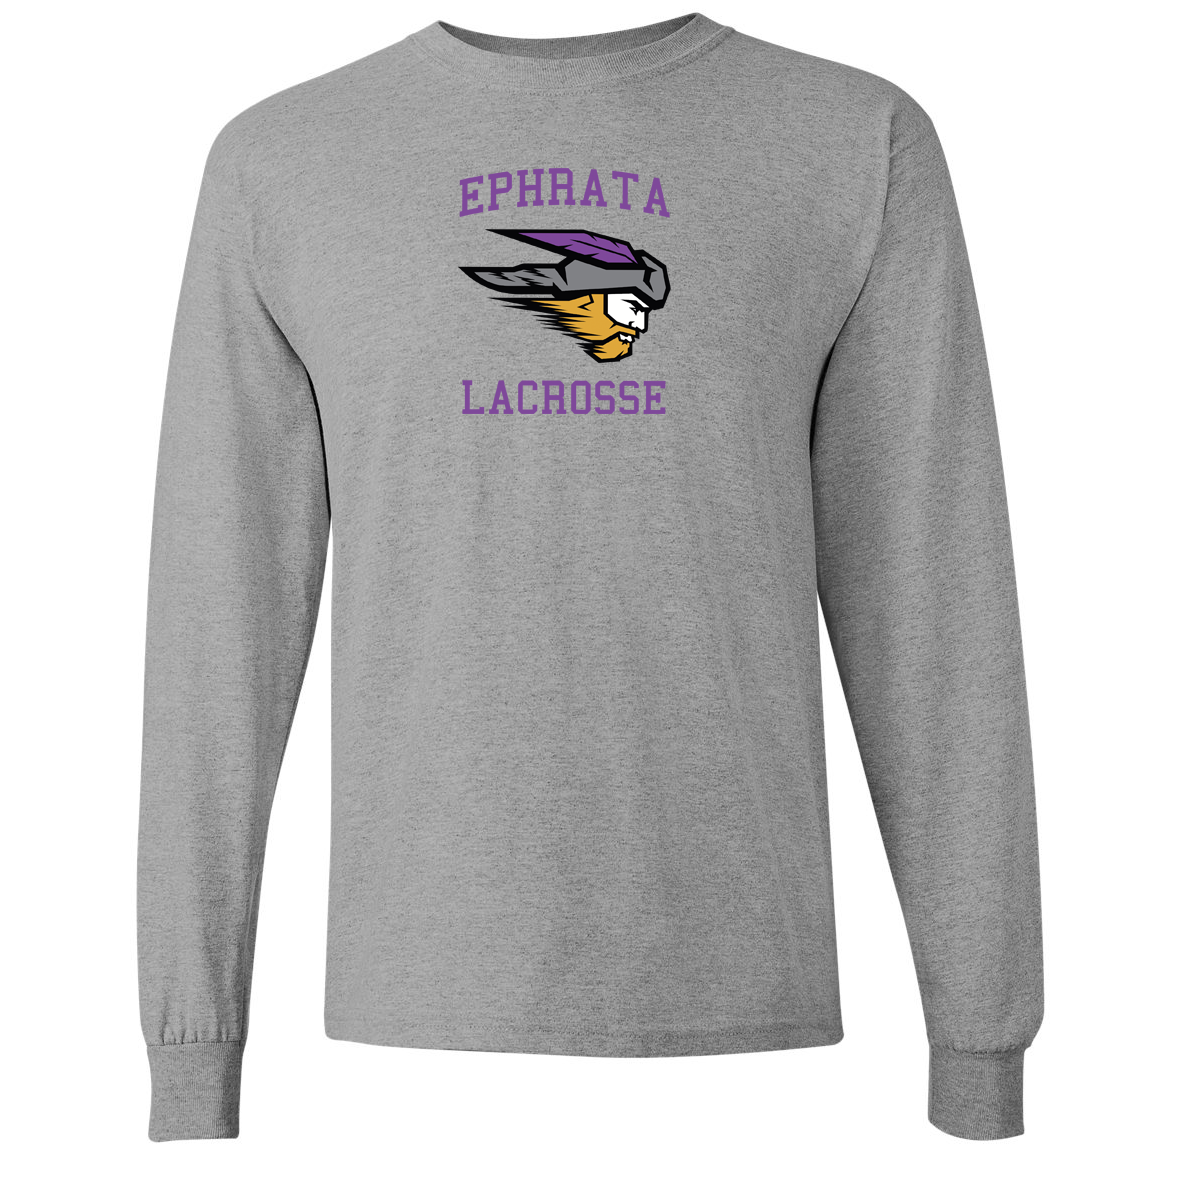 Ephrata Lacrosse Gildan Ultra Cotton Long Sleeve Shirt